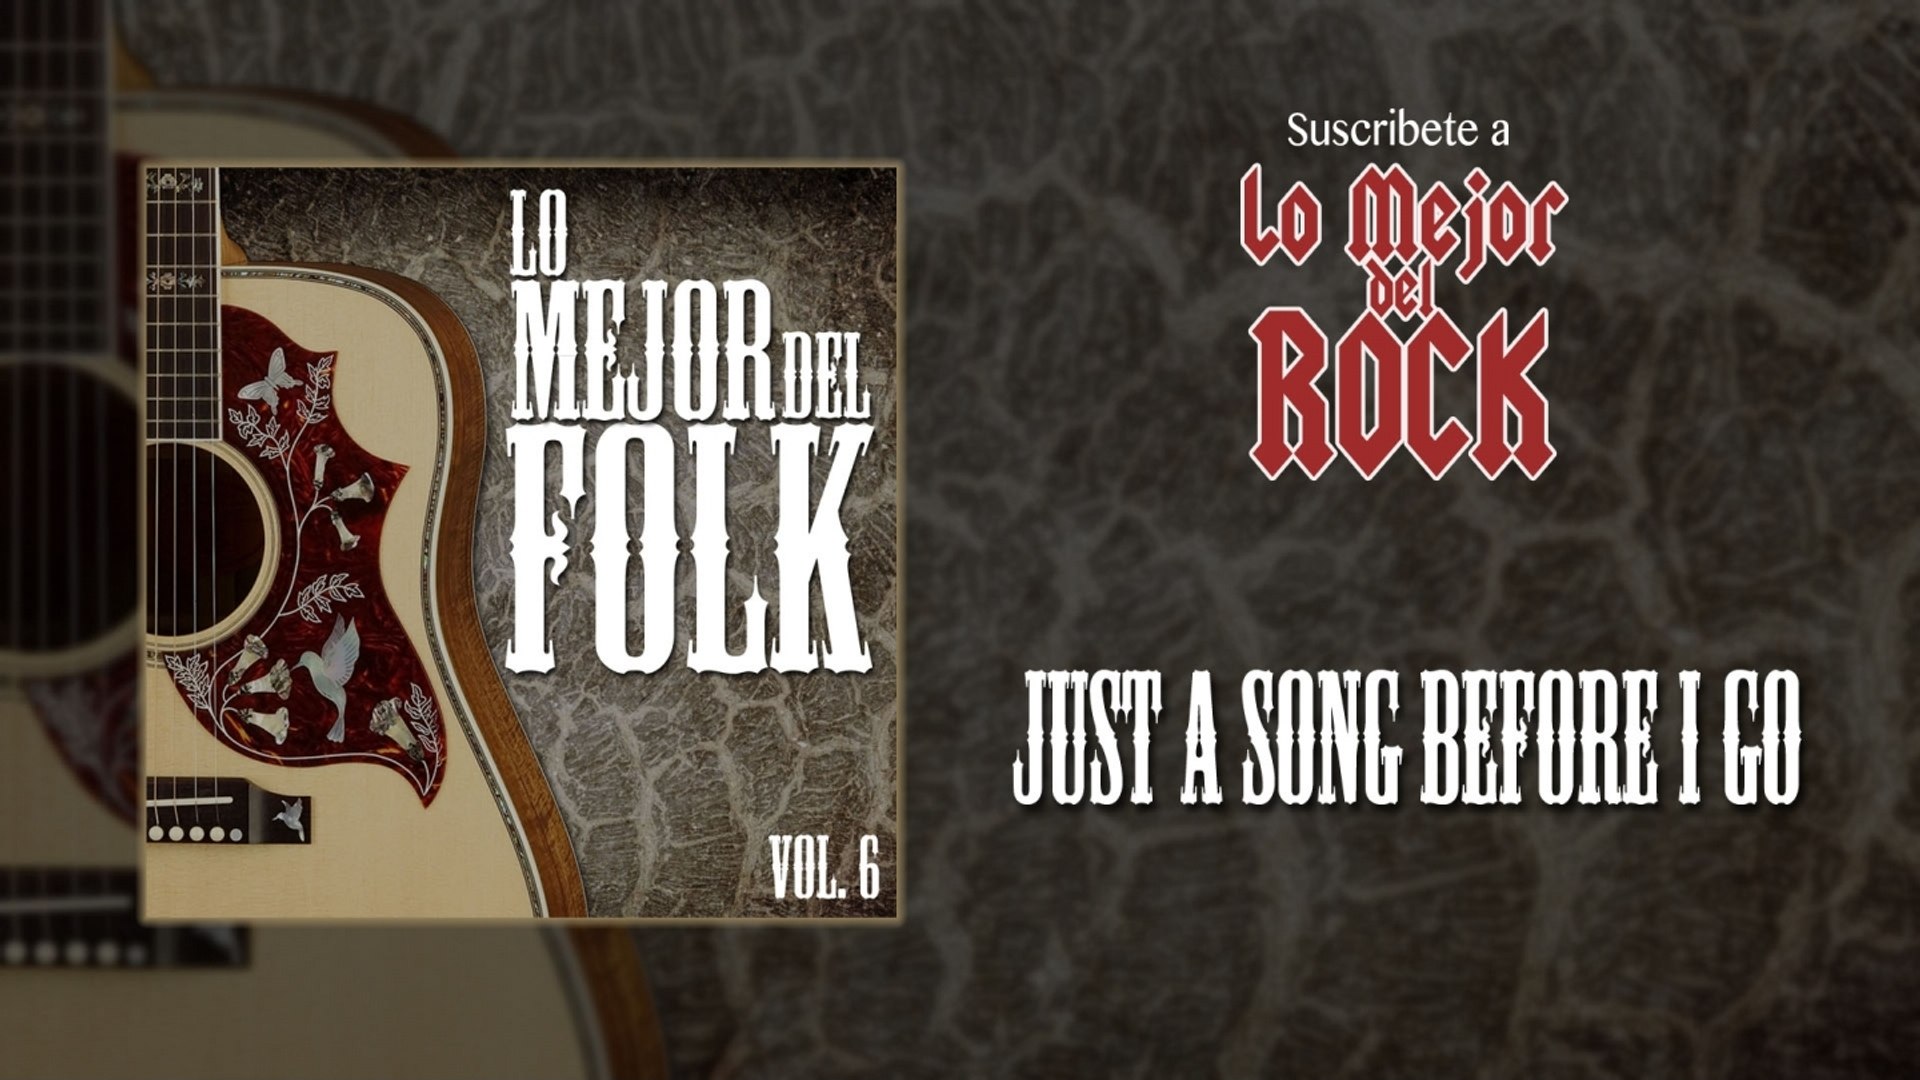 Lo Mejor del Folk - Vol. 6 - Just A Song Before I Go